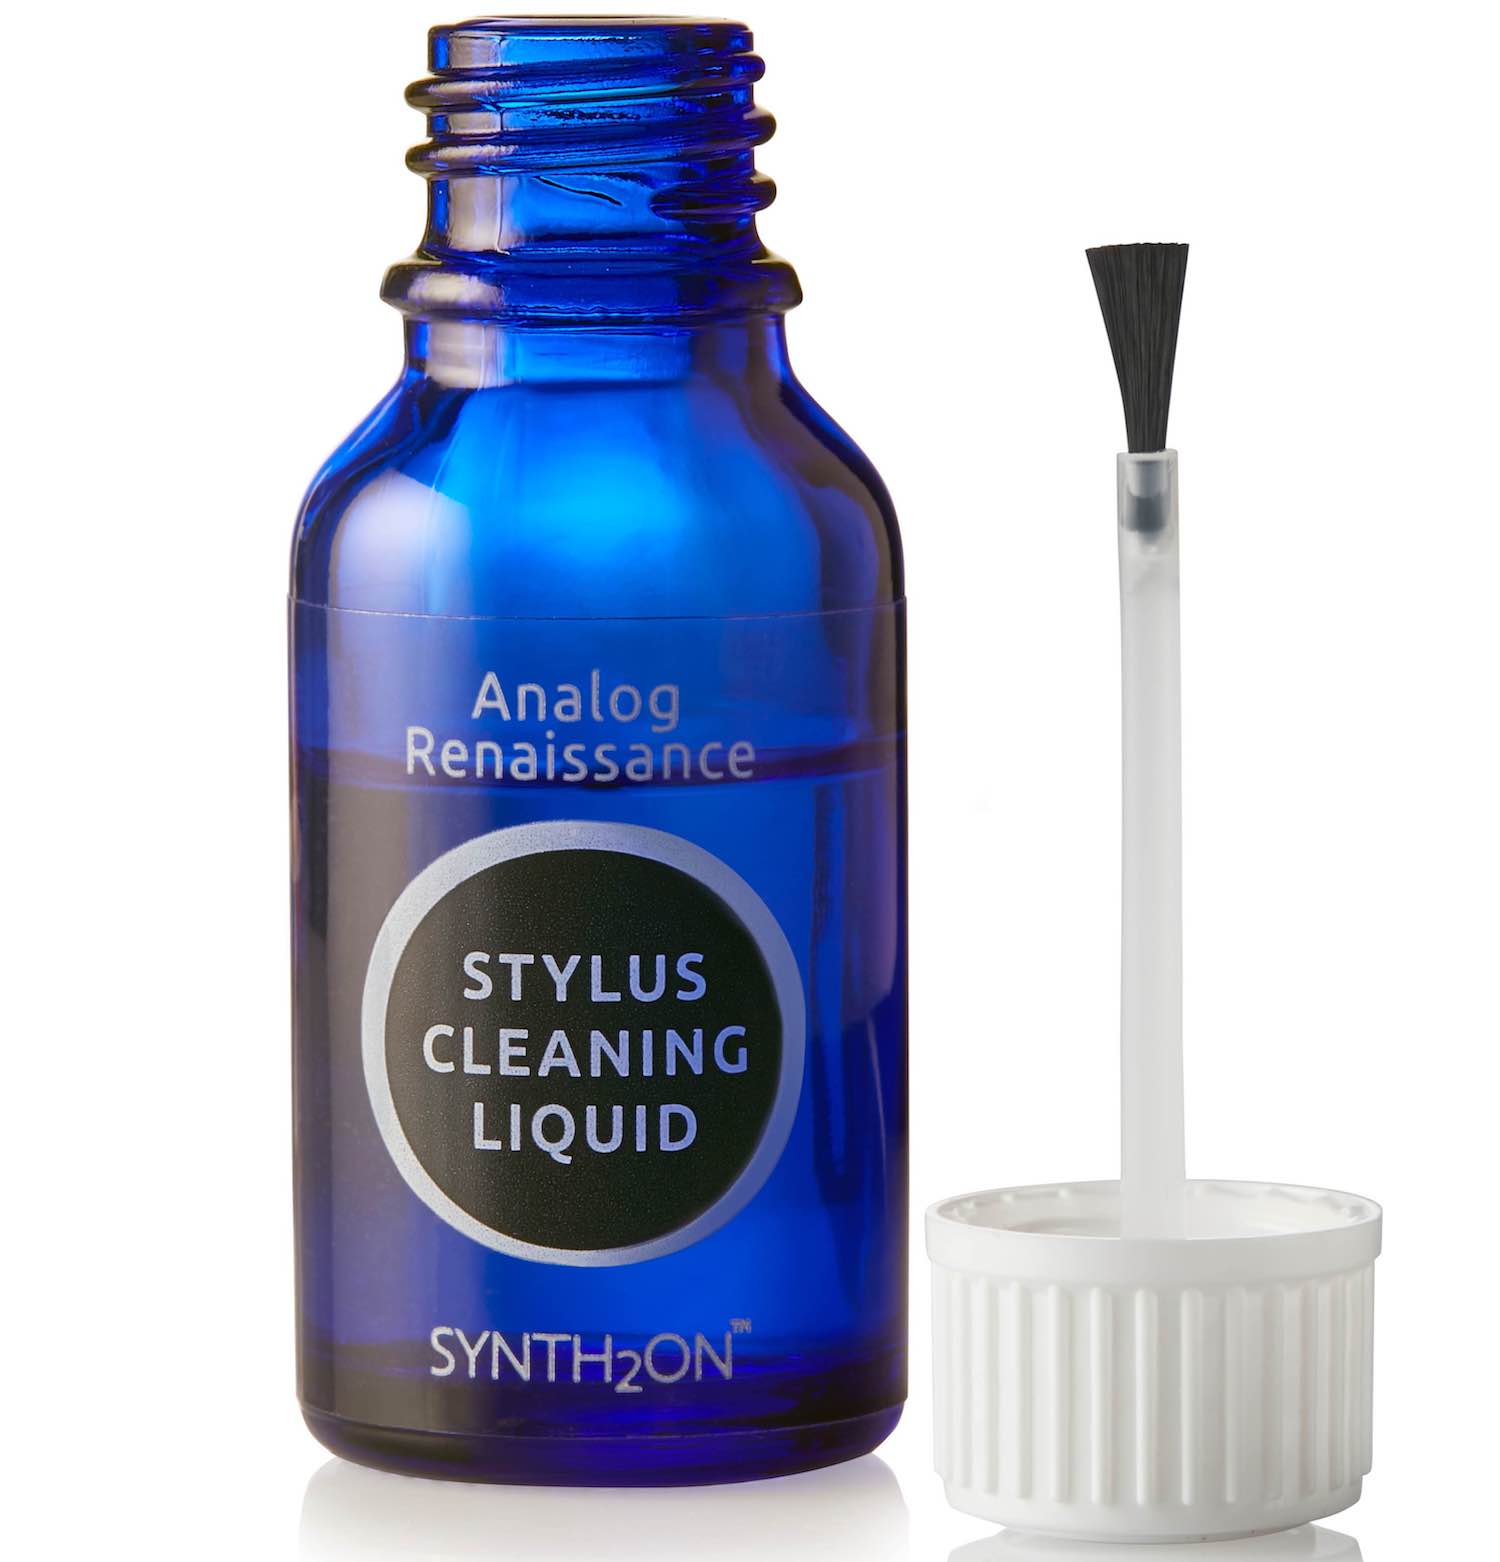 Фото № 1 Analog Renaissance Stylus Cleaning Liquid - цены, наличие, отзывы в интернет-магазине